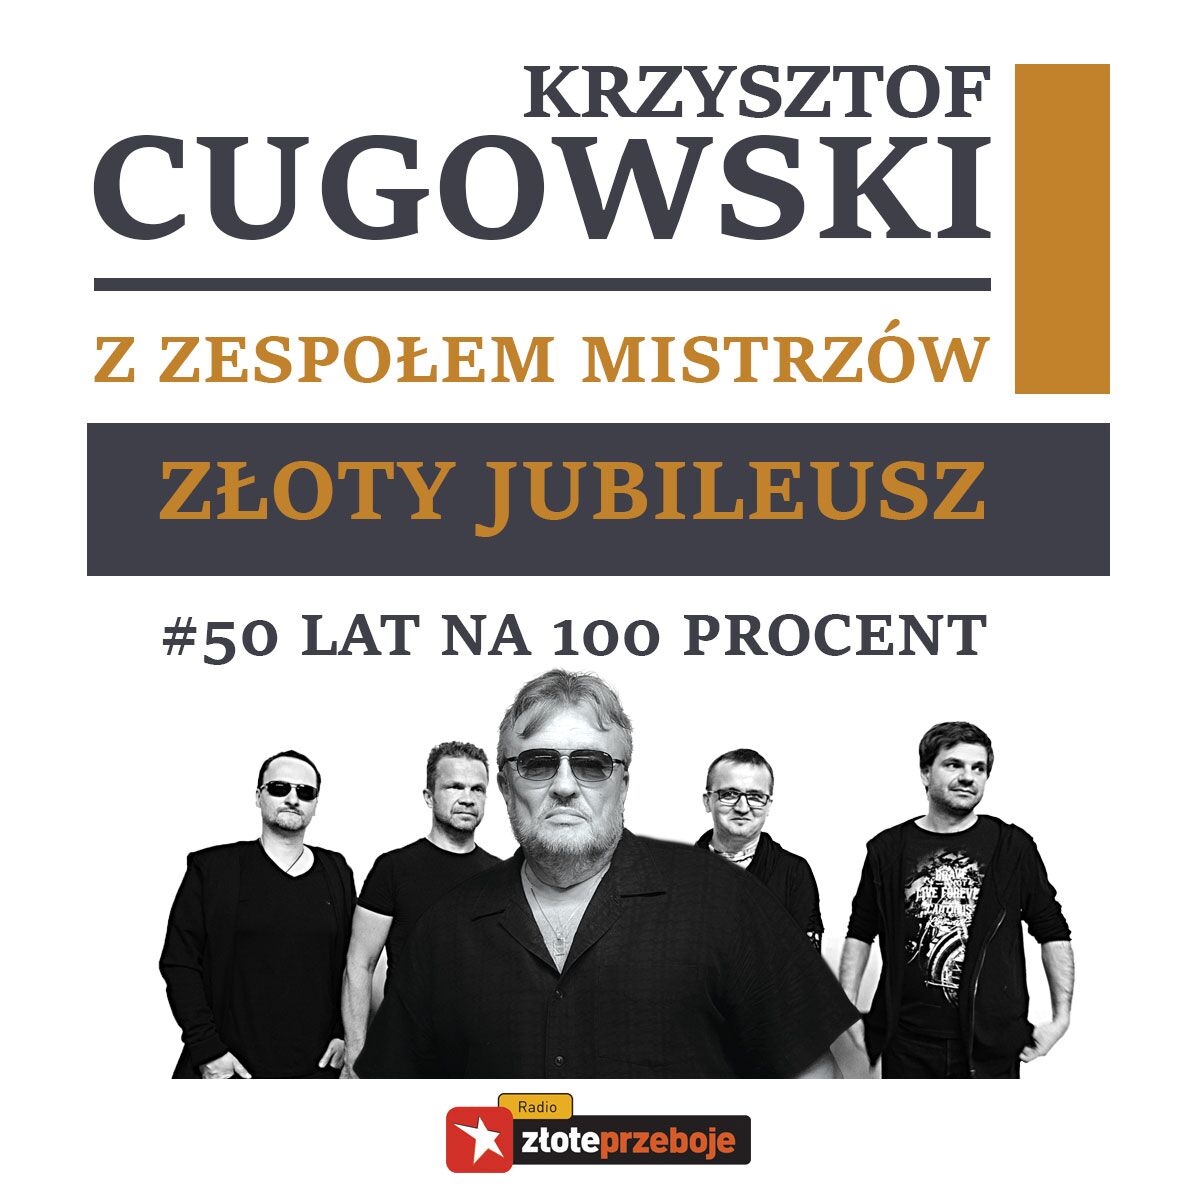 Krzysztof Cugowski w ten weekend zaśpiewa w Warszawie!